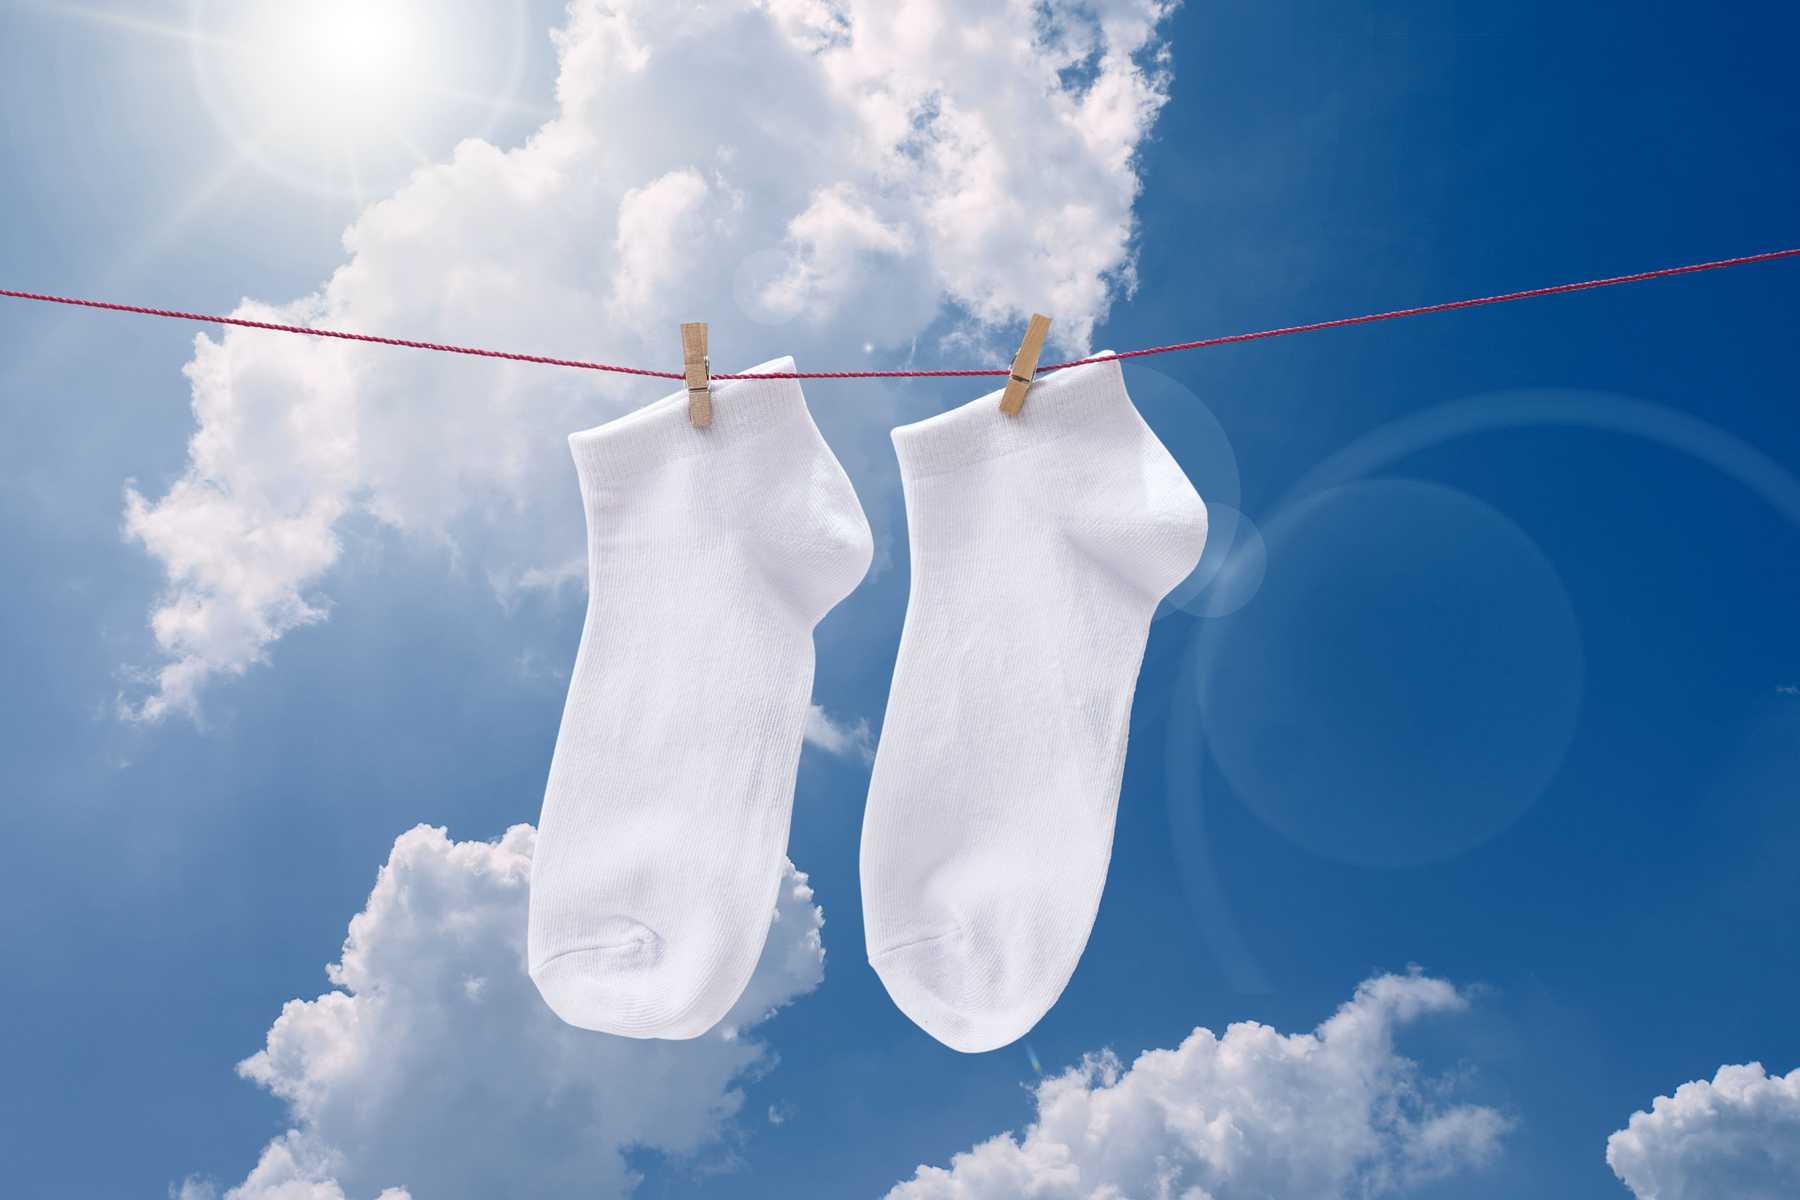 Hãy đảm bảo những đôi tất được giặt hàng ngày và phơi khô dưới ánh nắng trực tiếp.